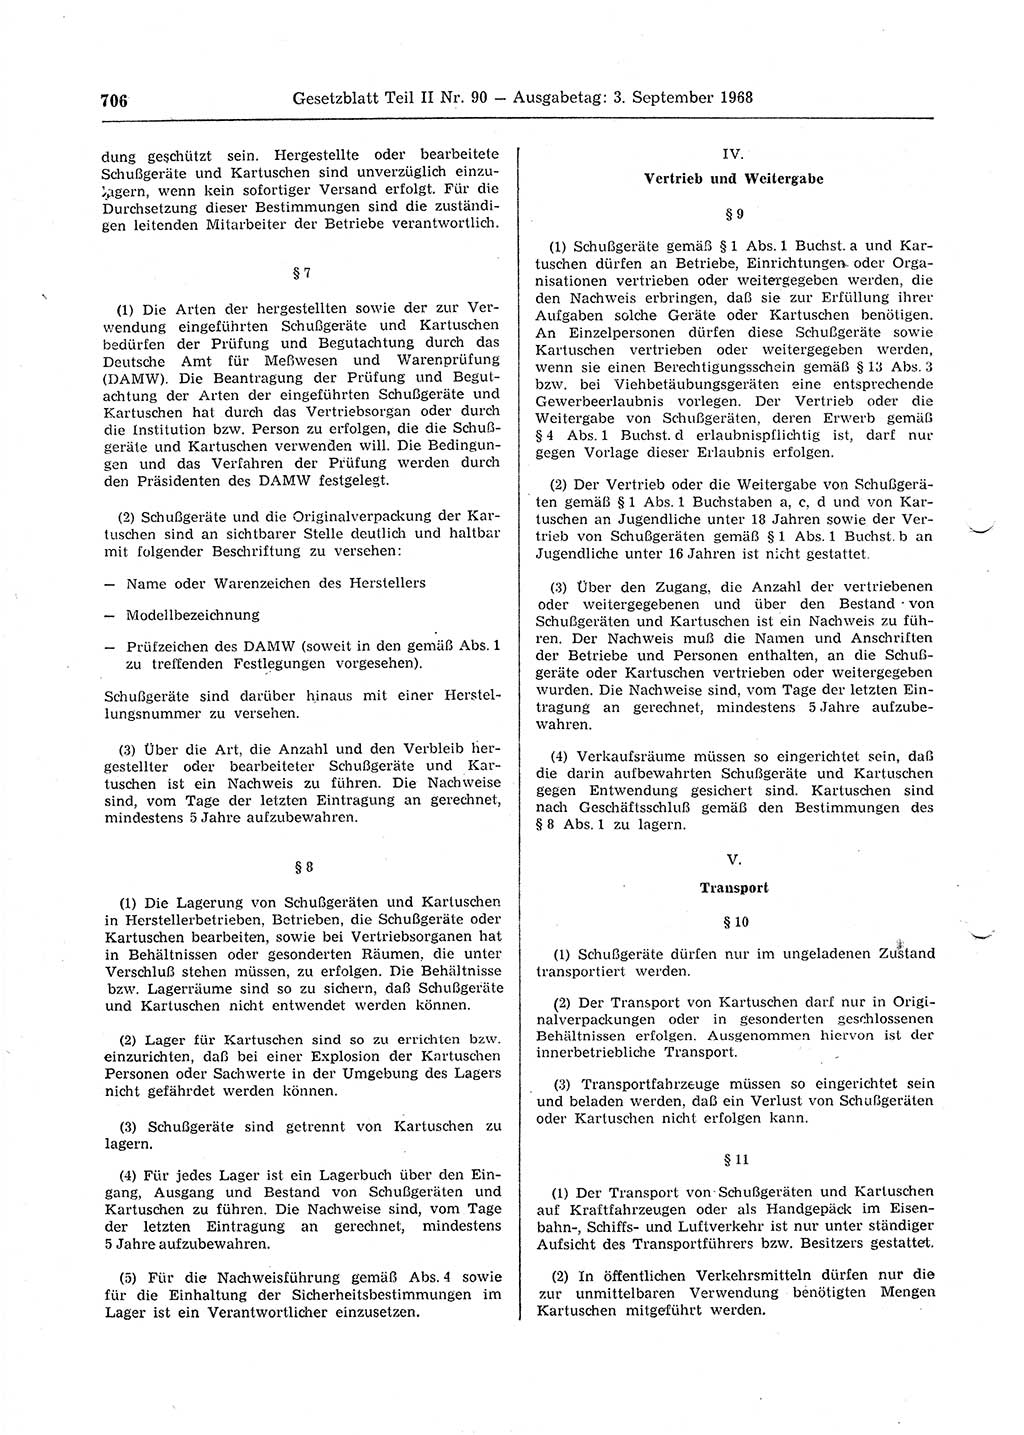 Gesetzblatt (GBl.) der Deutschen Demokratischen Republik (DDR) Teil ⅠⅠ 1968, Seite 706 (GBl. DDR ⅠⅠ 1968, S. 706)